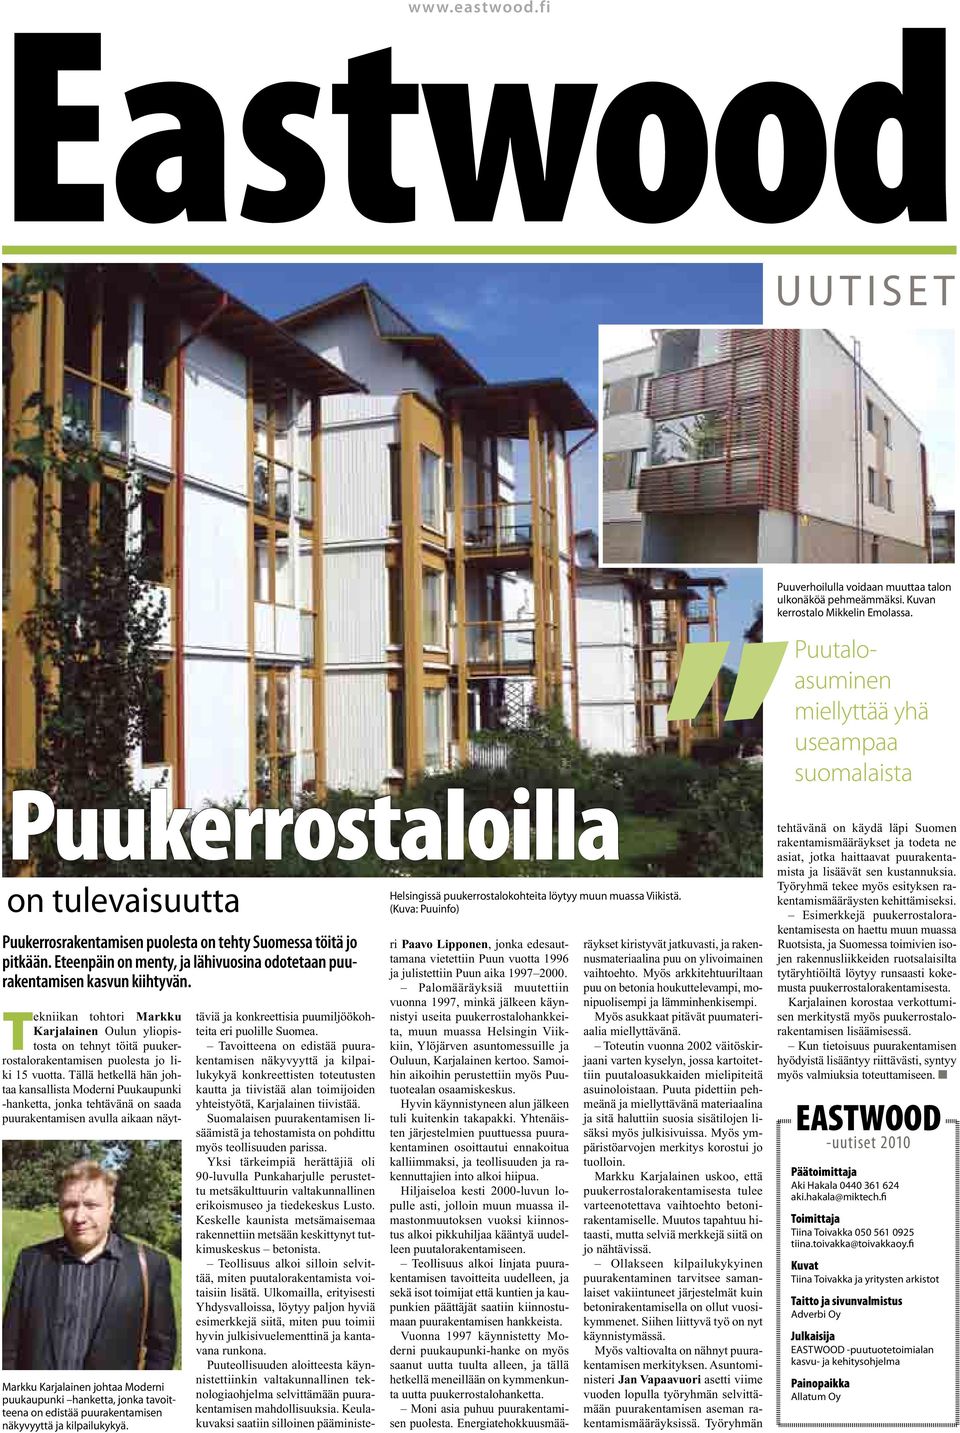 Tekniikan tohtori Markku Karjalainen Oulun yliopistosta on tehnyt töitä puukerrostalorakentamisen puolesta jo liki 15 vuotta.